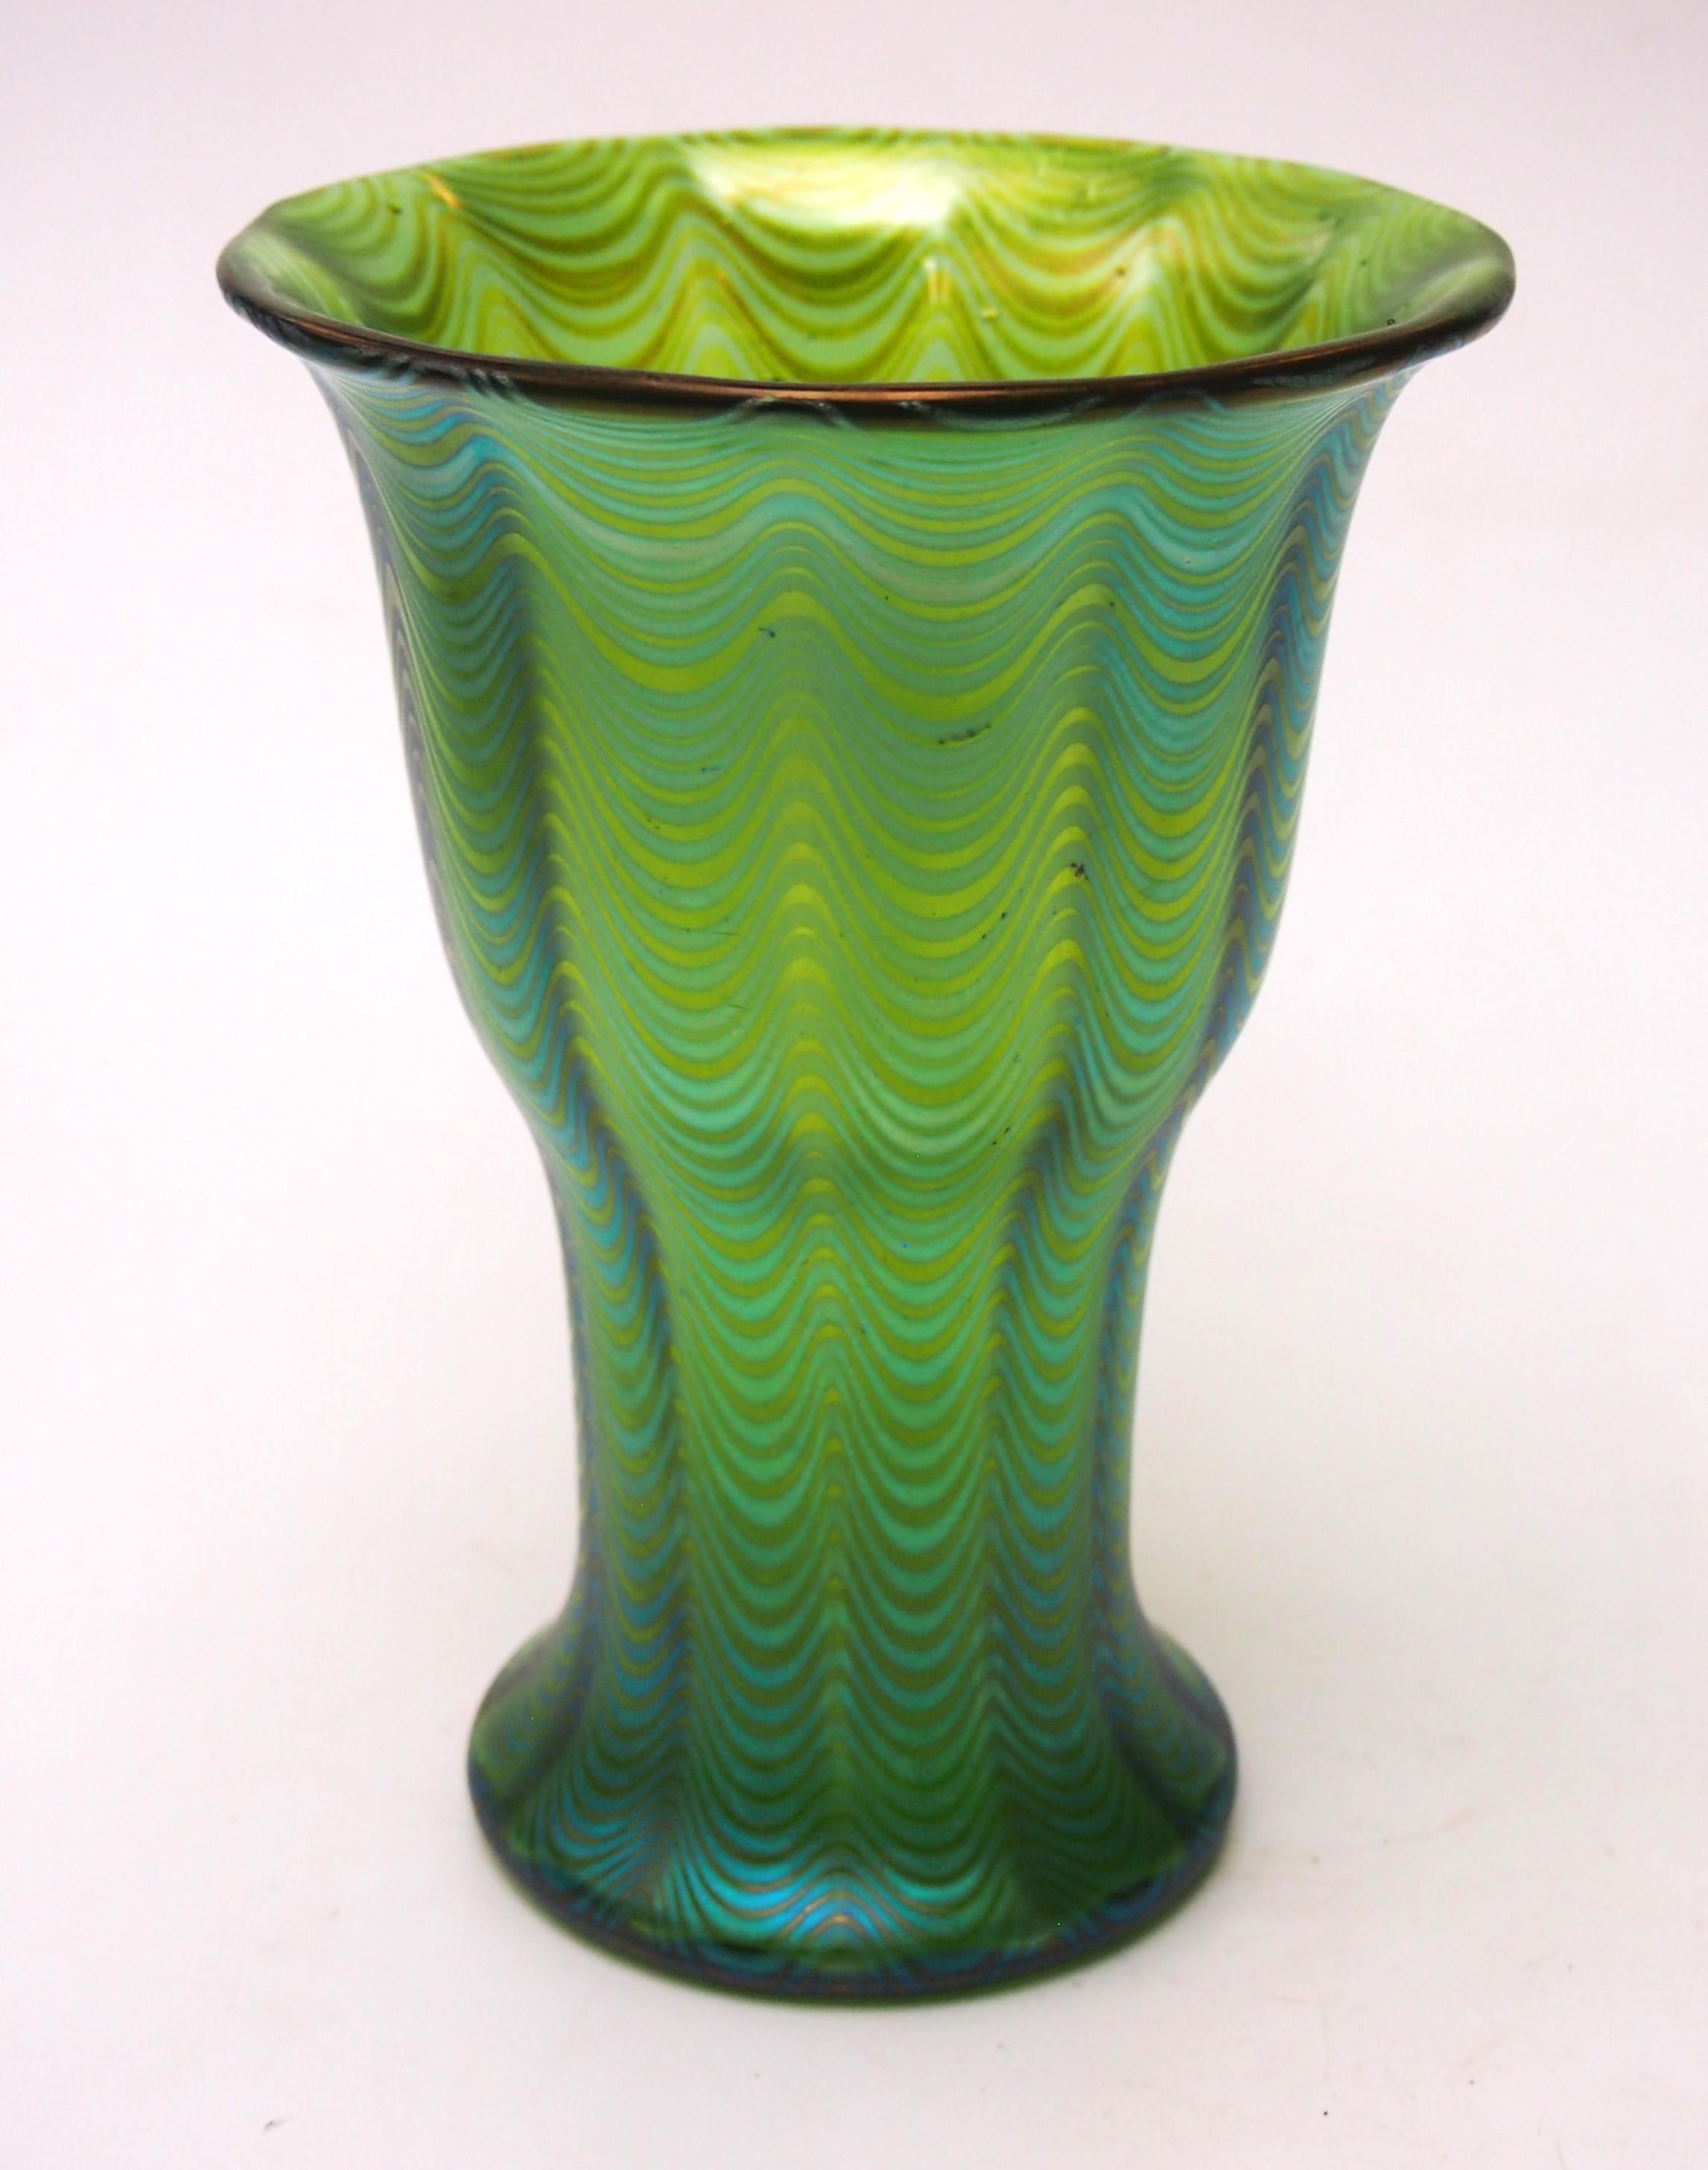 Un superbe vase Loetz Phaenomen entièrement documenté. Cet exemple est documenté par le motif PG 6893 de Phaenomen et la couleur est appelée Calle (vert) - Le motif PG 6893  Les fils sont dessinés en forme de vague dans un moule (souvent un moule